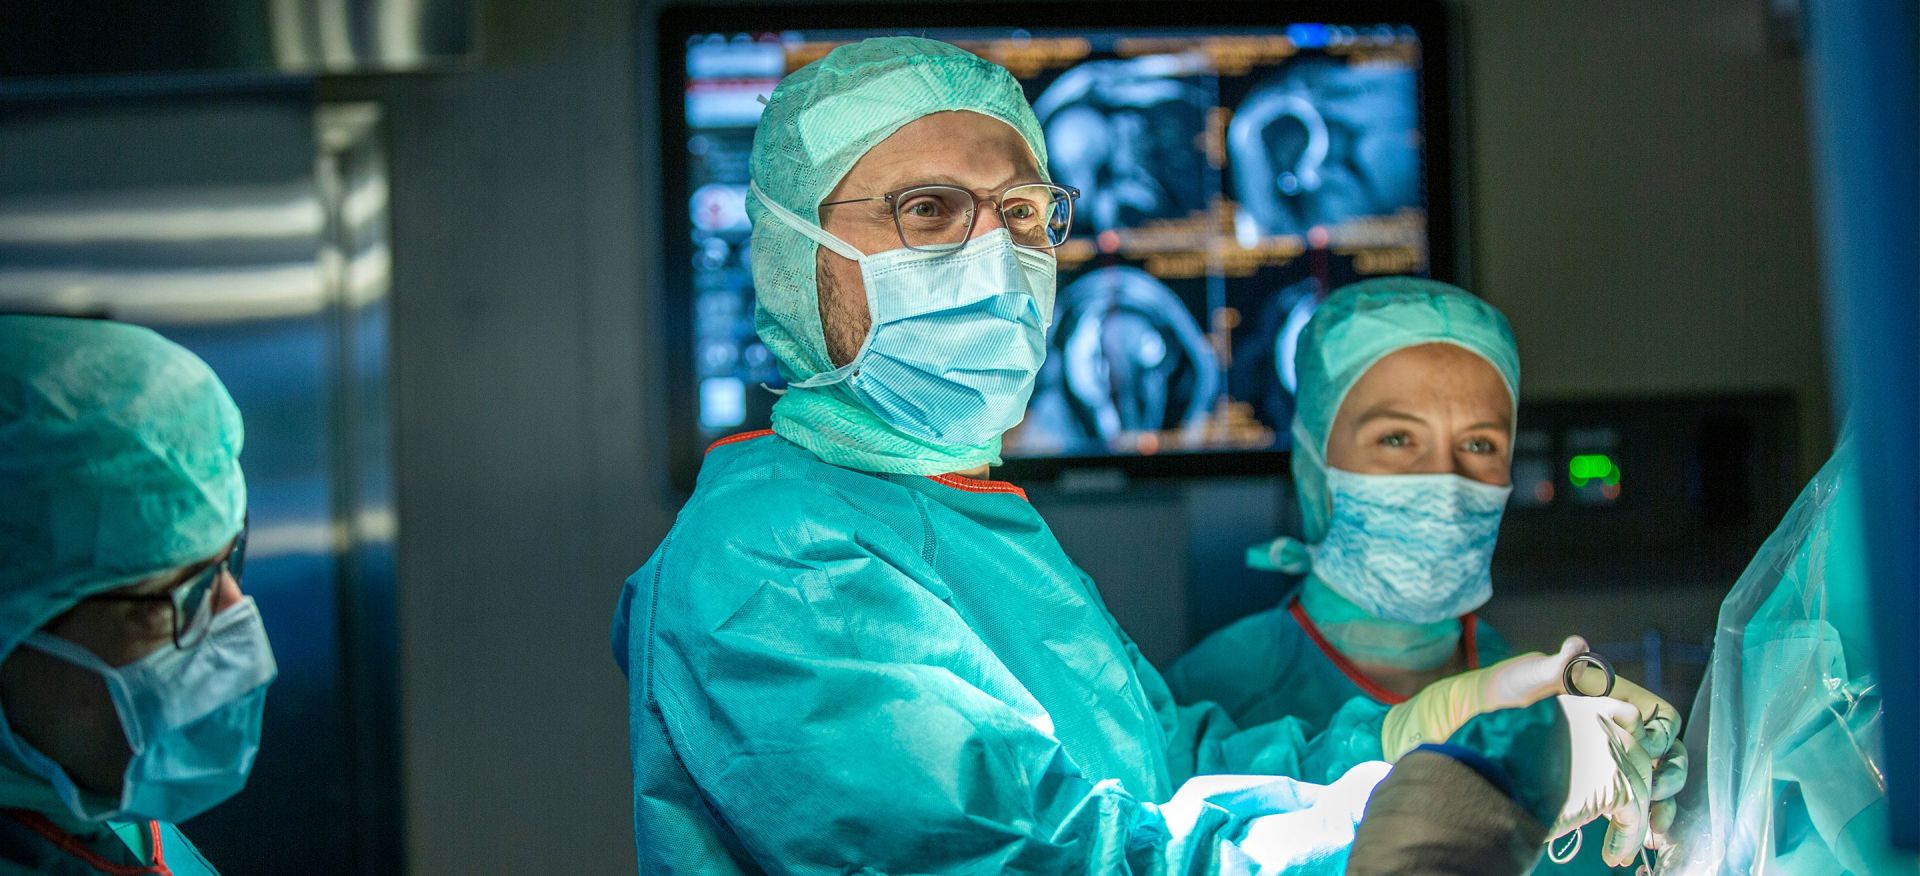 Auf höchstem Niveau operieren: Chirurginnen und Chirurgen bei einem Eingriff | KSW Storys